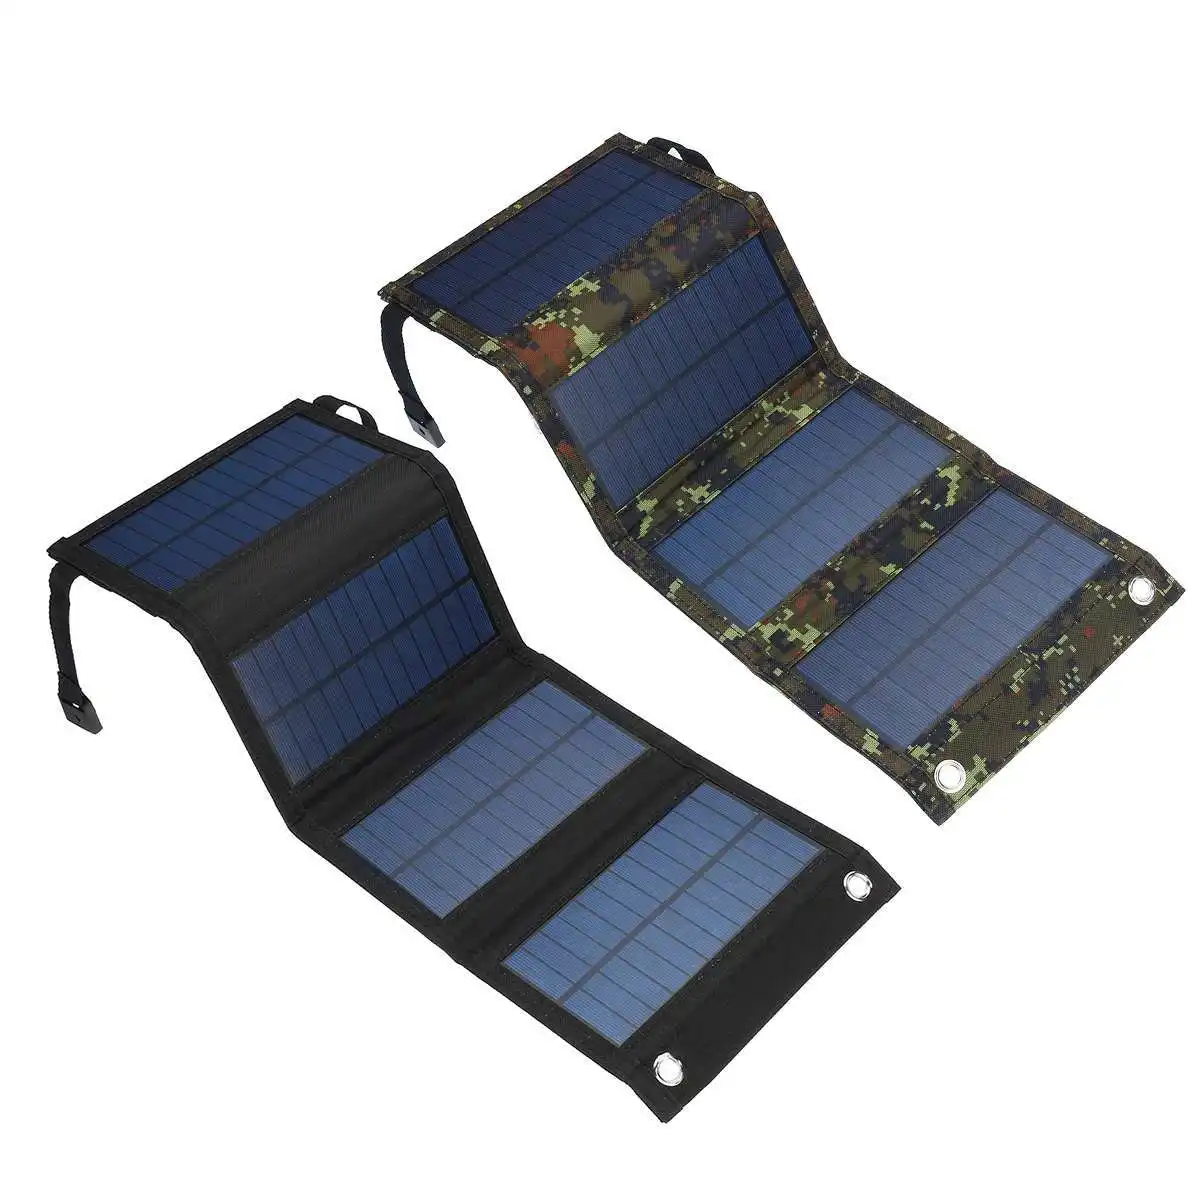 لوحة طاقة شمسية قابلة للطي أحادية البلورية بقدرة 20 وات لوحة طاقة شمسية بقدرة 30 وات لوحة طاقة شمسية بجهد 18 فولت لوحة طاقة شمسية صغيرة محمولة بقدرة 5 و10 و15 و20 و35 و40 وات